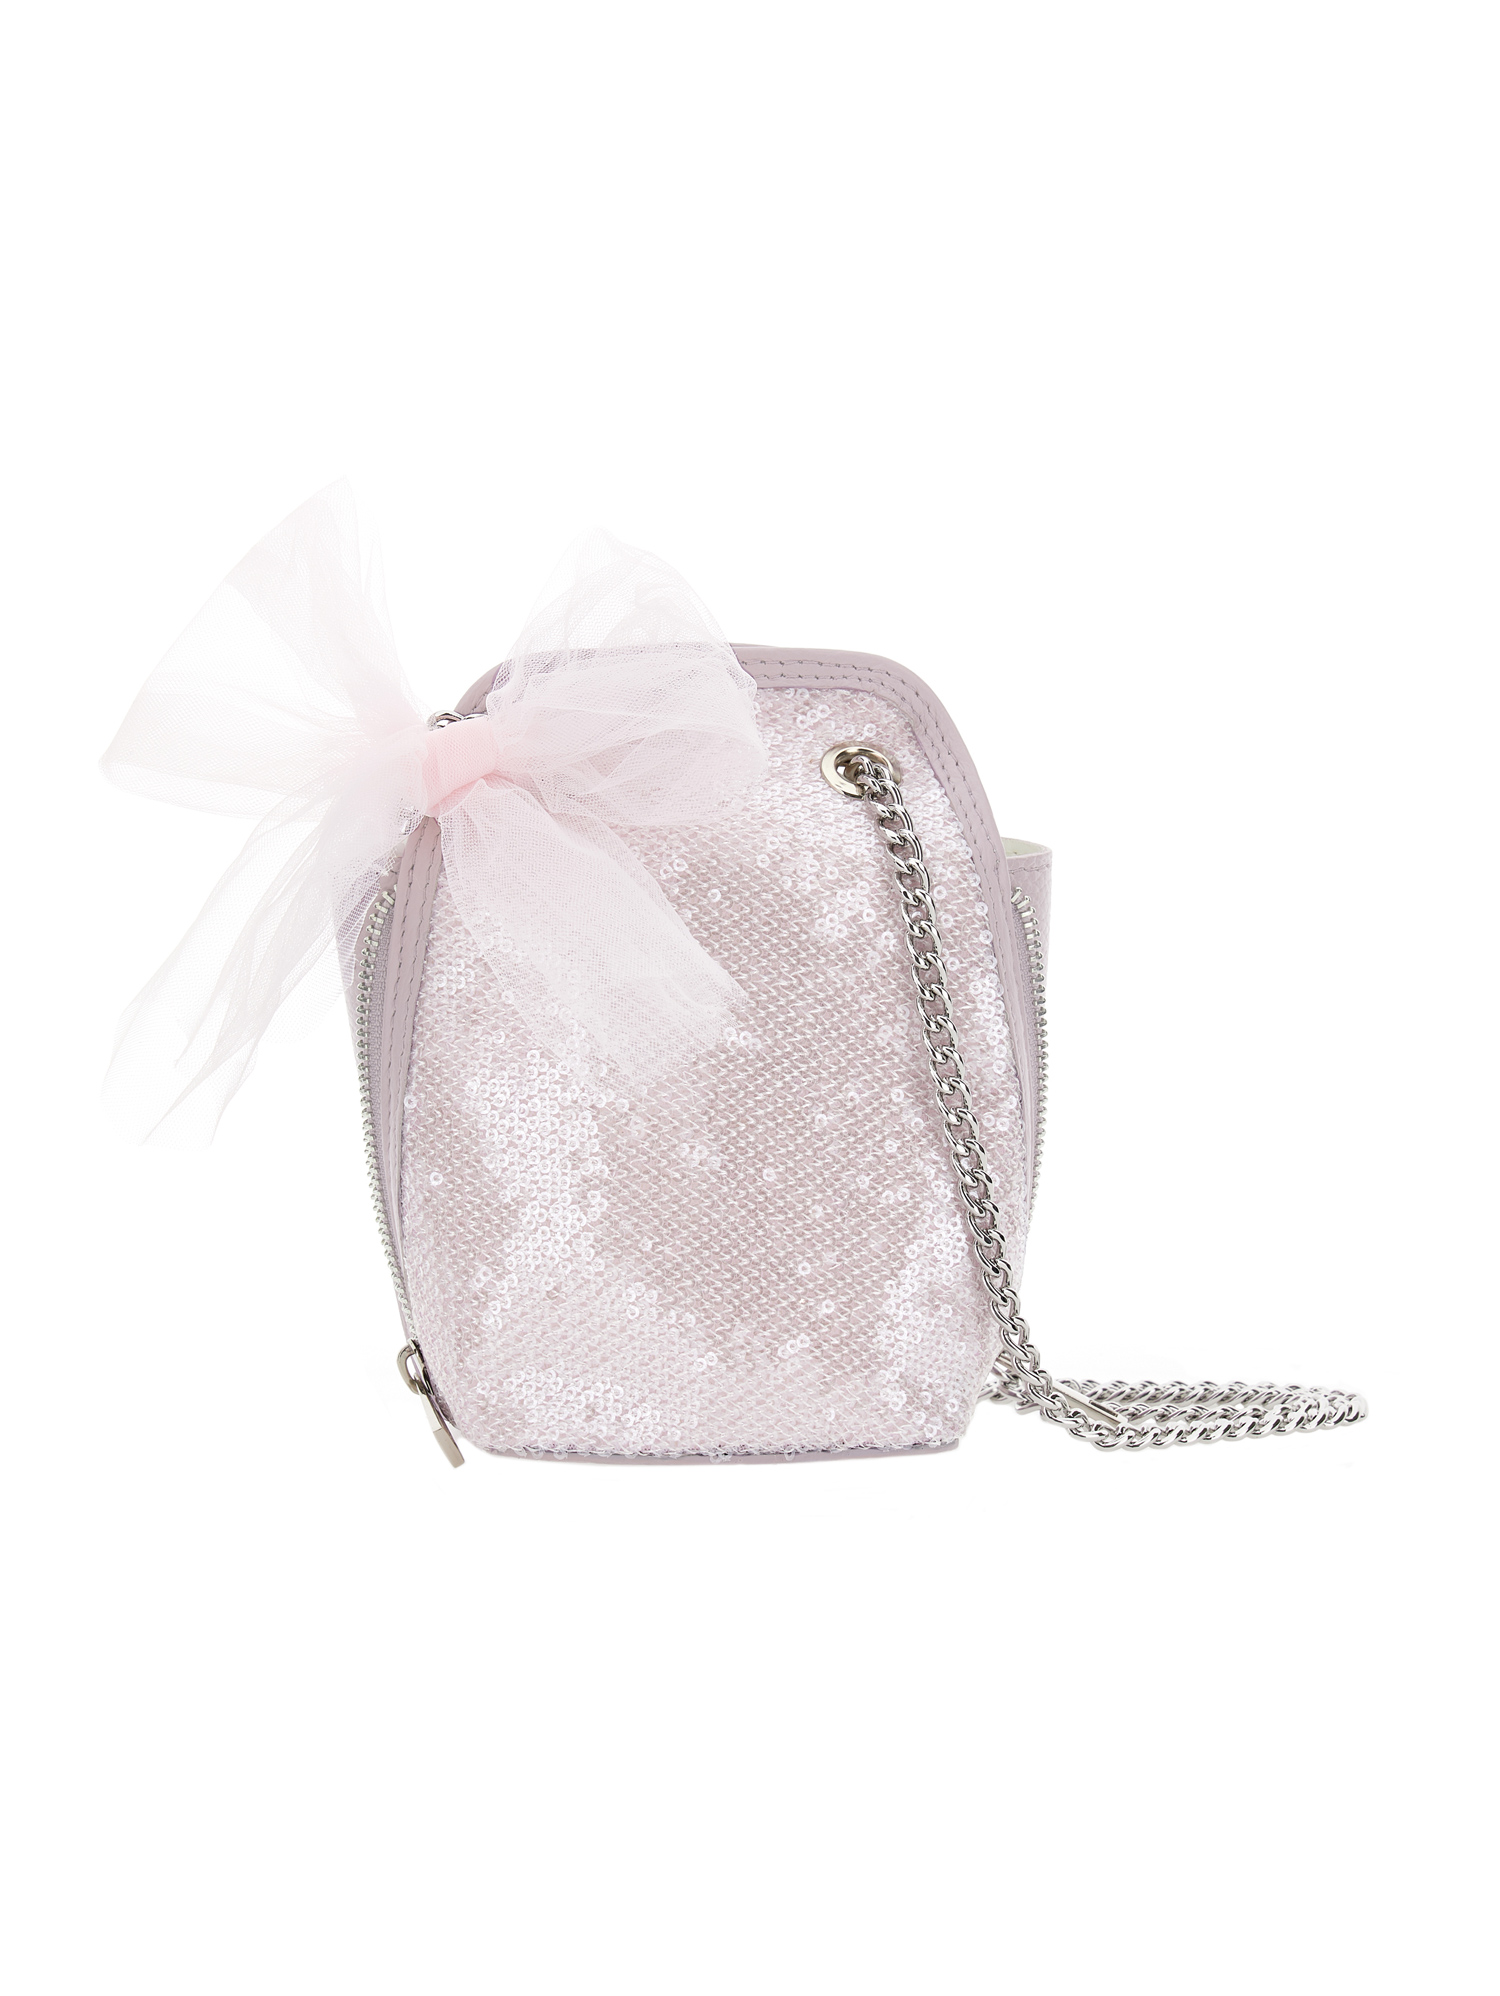 Monnalisa Babies'   Sequinned Bag In Dusty Pink Rose